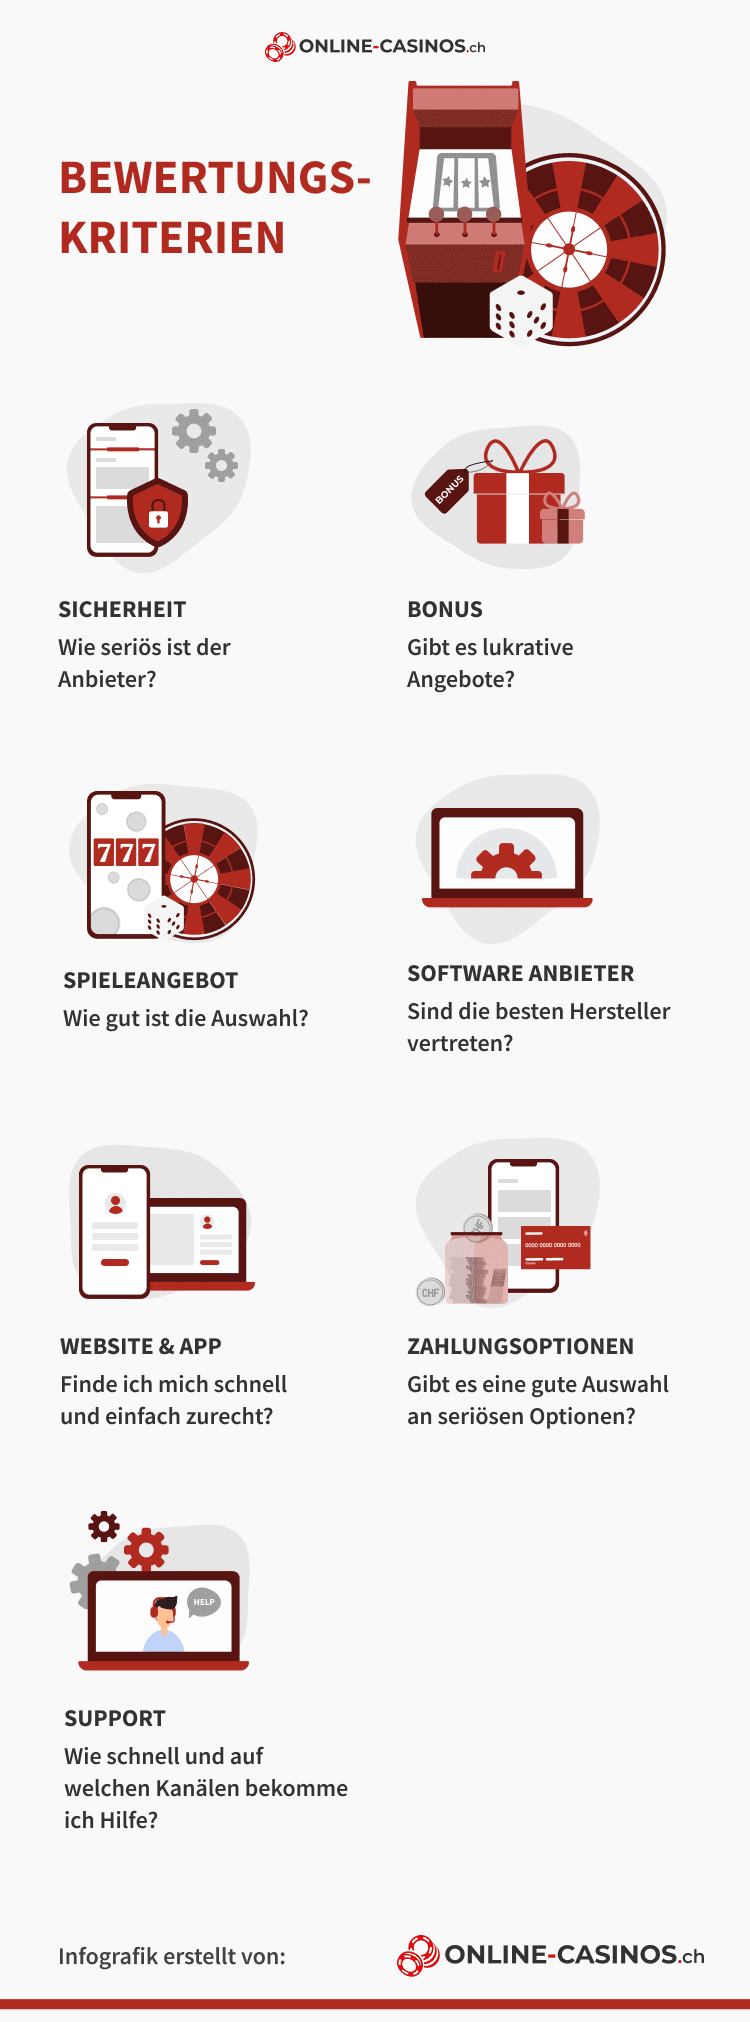 Bewertungskriterien für Online-Casinos.ch im Überblick